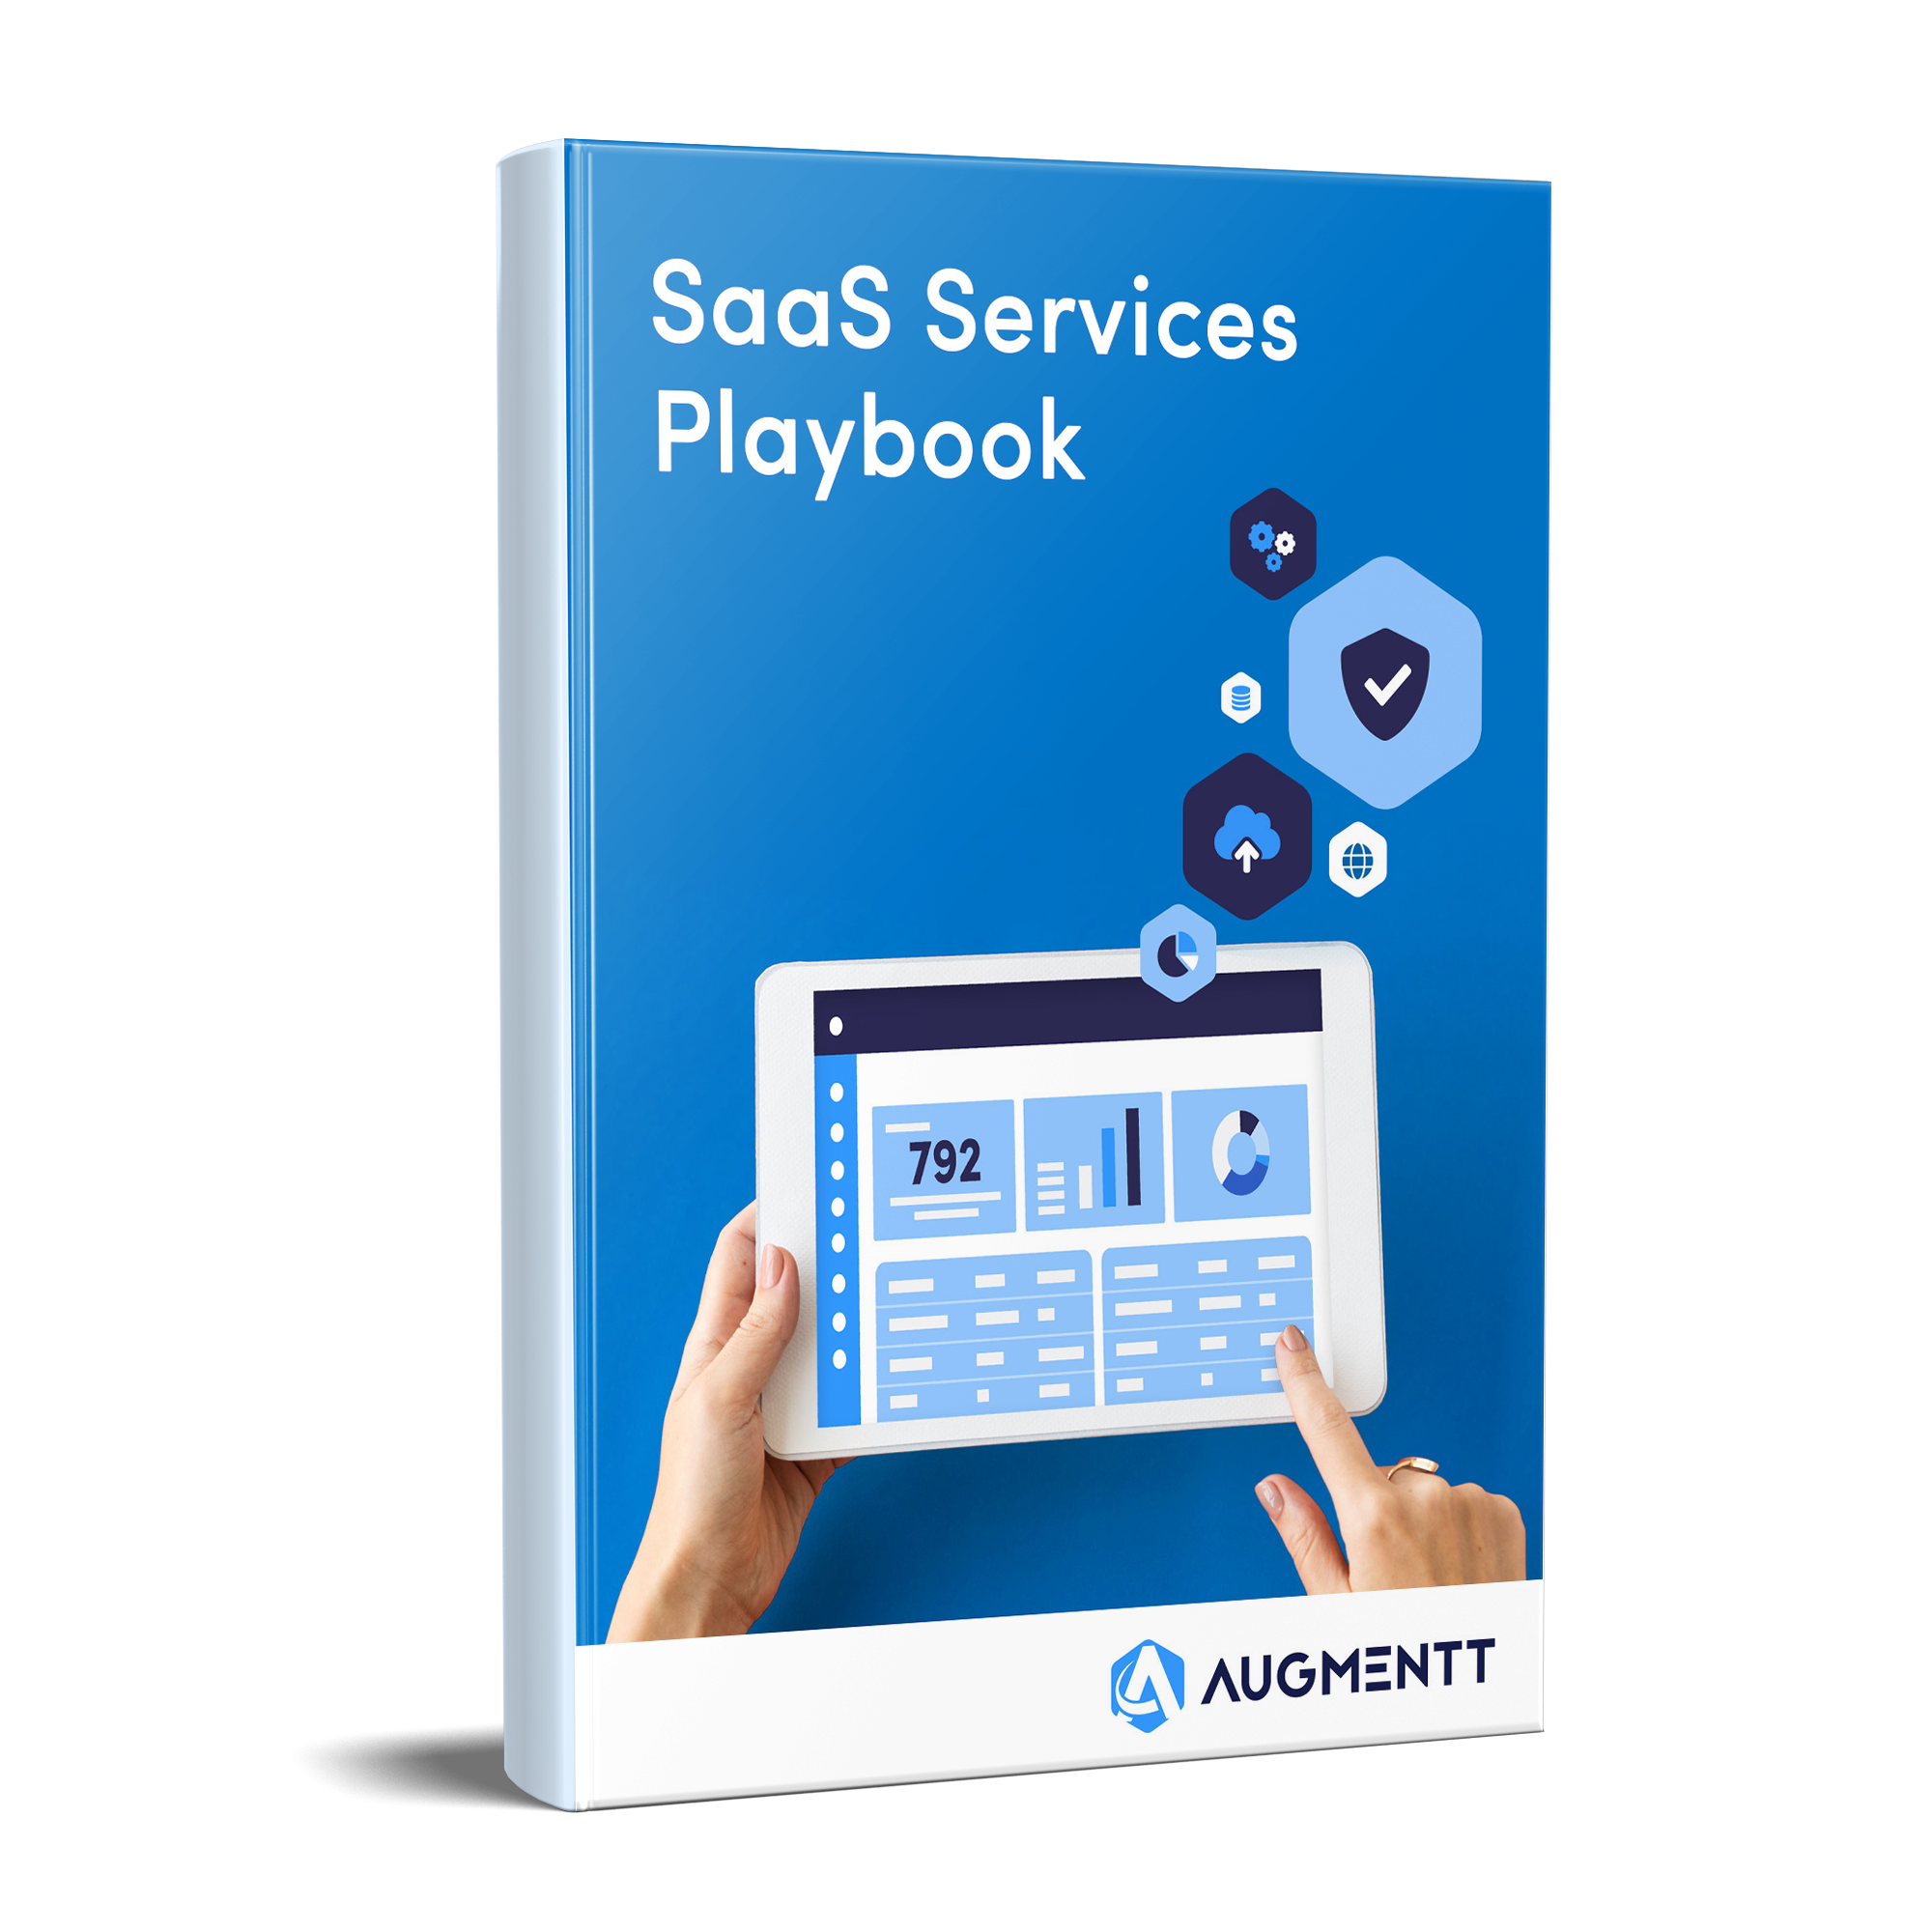 SaaS Services Playbook